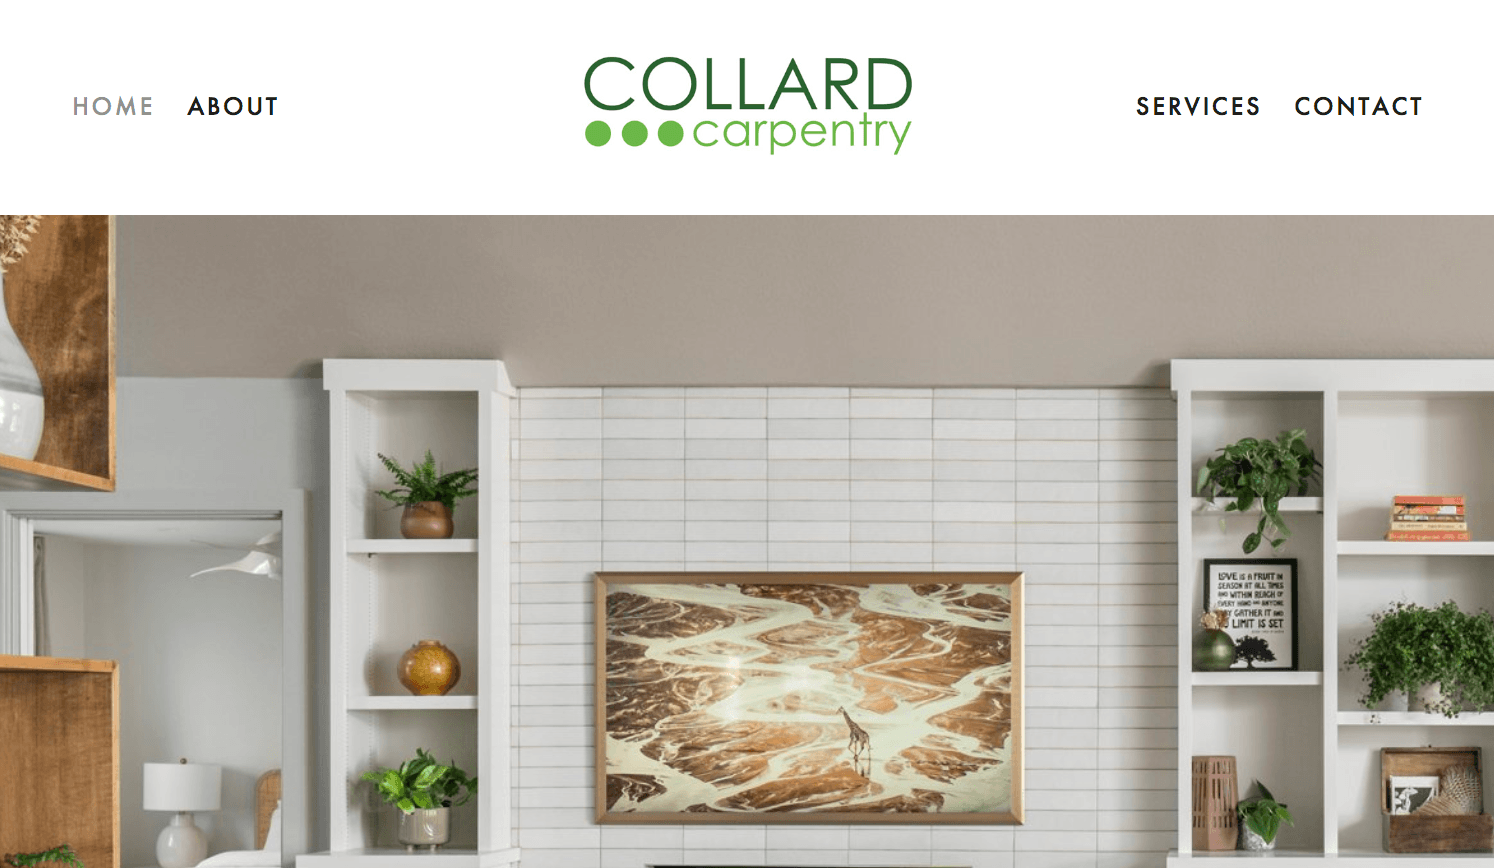 Collard Carpentry's website with modern design